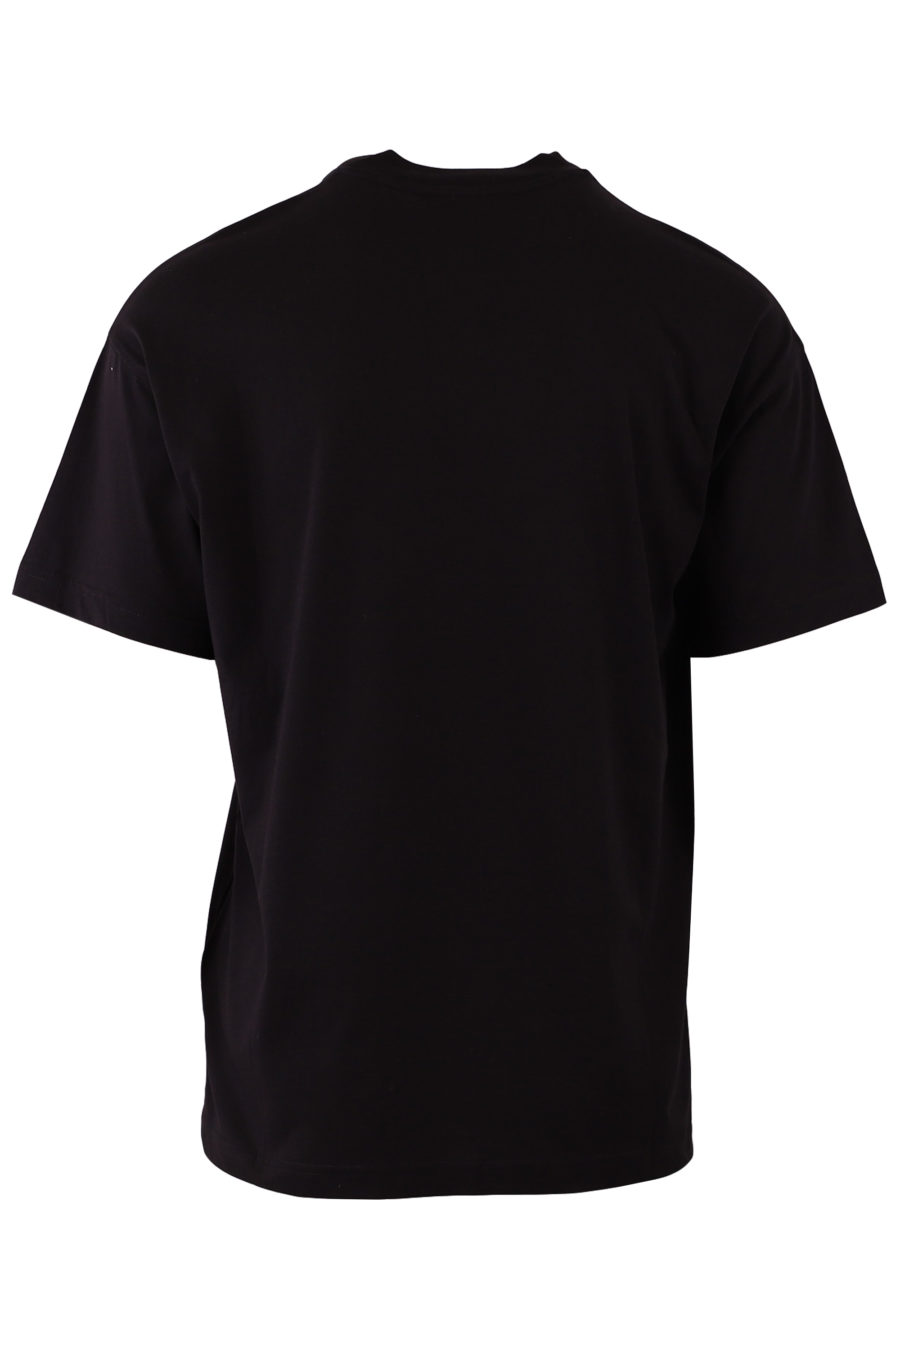 Camiseta negra con logo en blanco y rojo - c742a174ef84f0379f8c6181254770c75b057efc